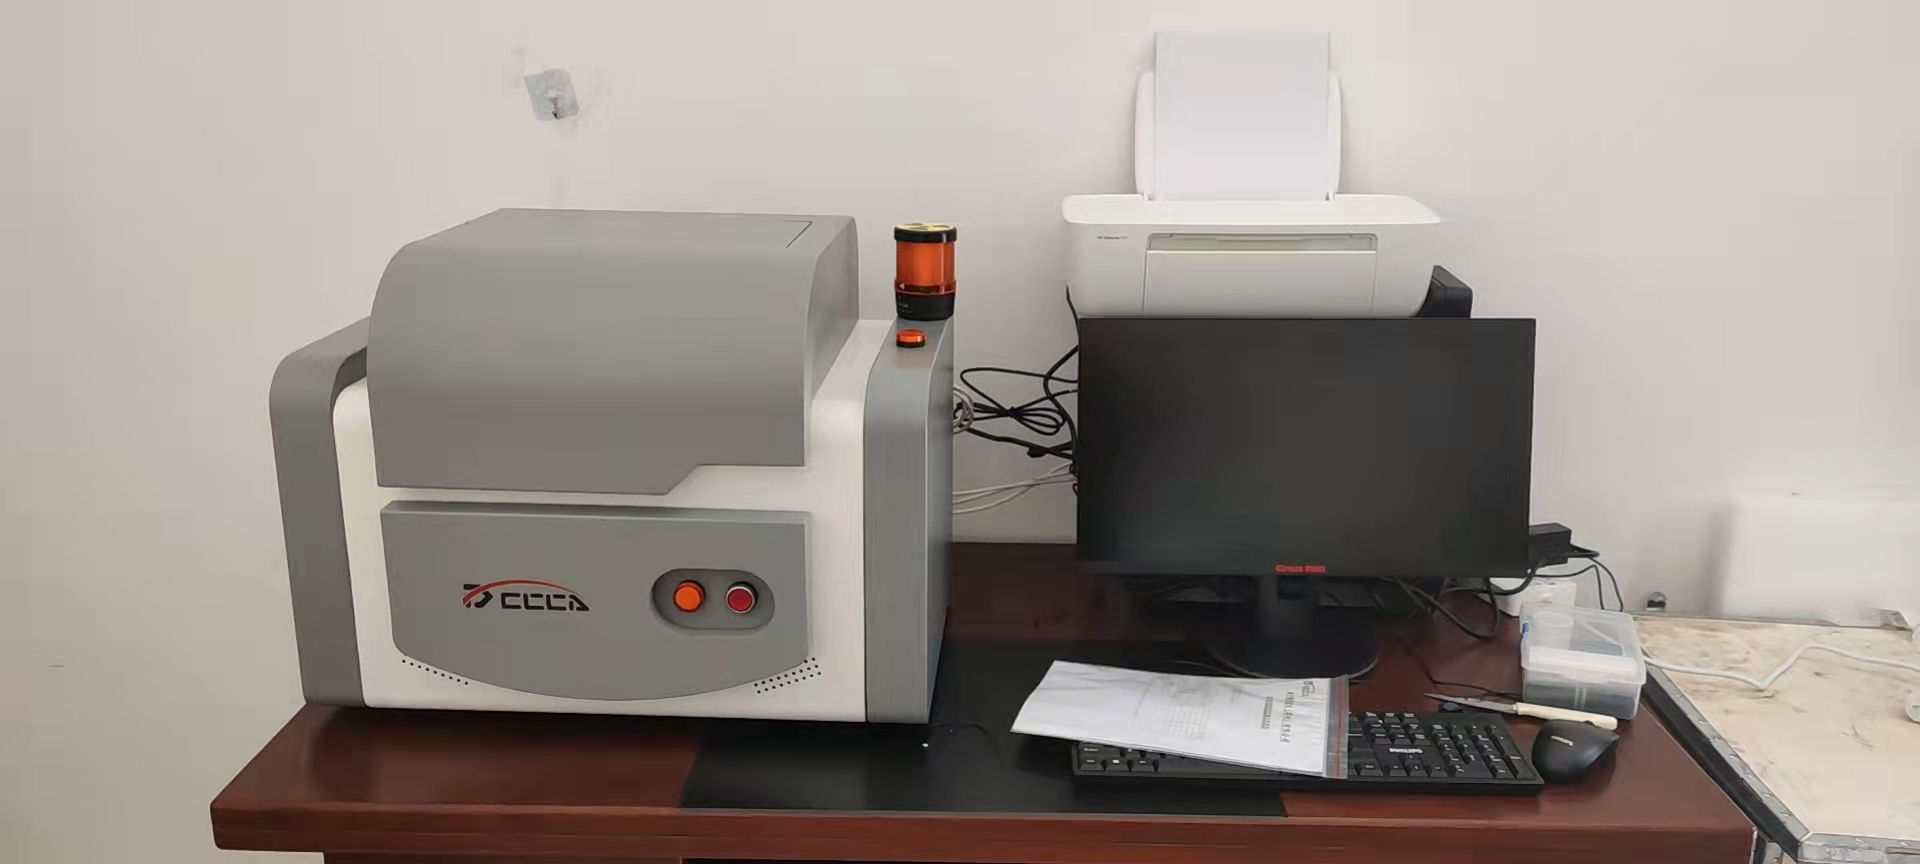 福建利源达工贸有限责任公司 X荧光光谱仪ROHS 分析仪交机